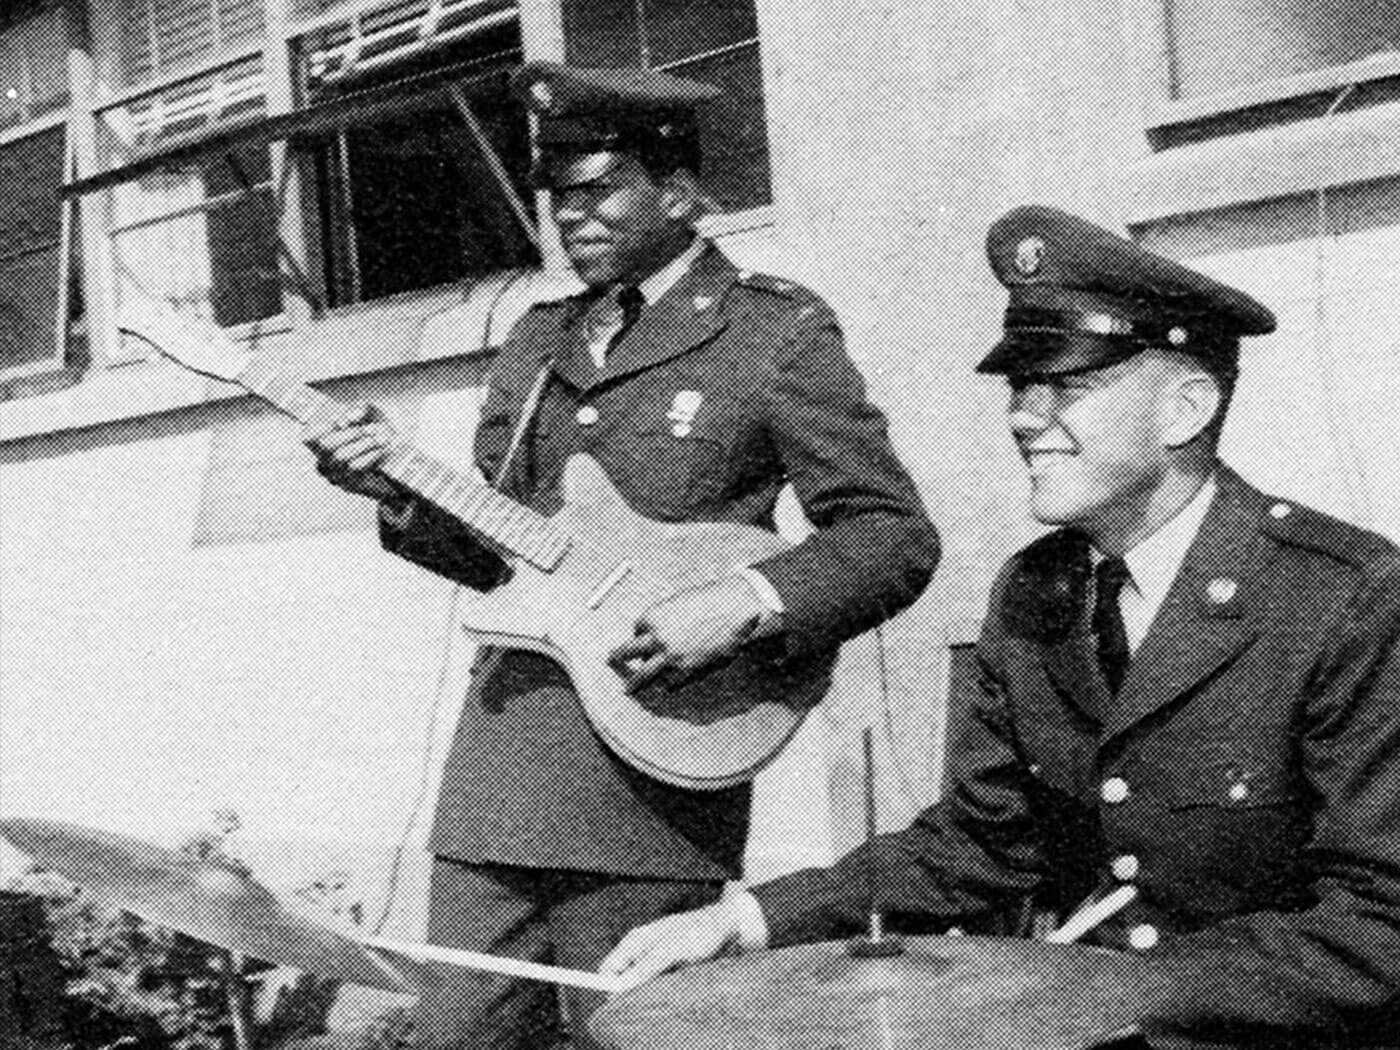 Jimi Hendrix in 1961